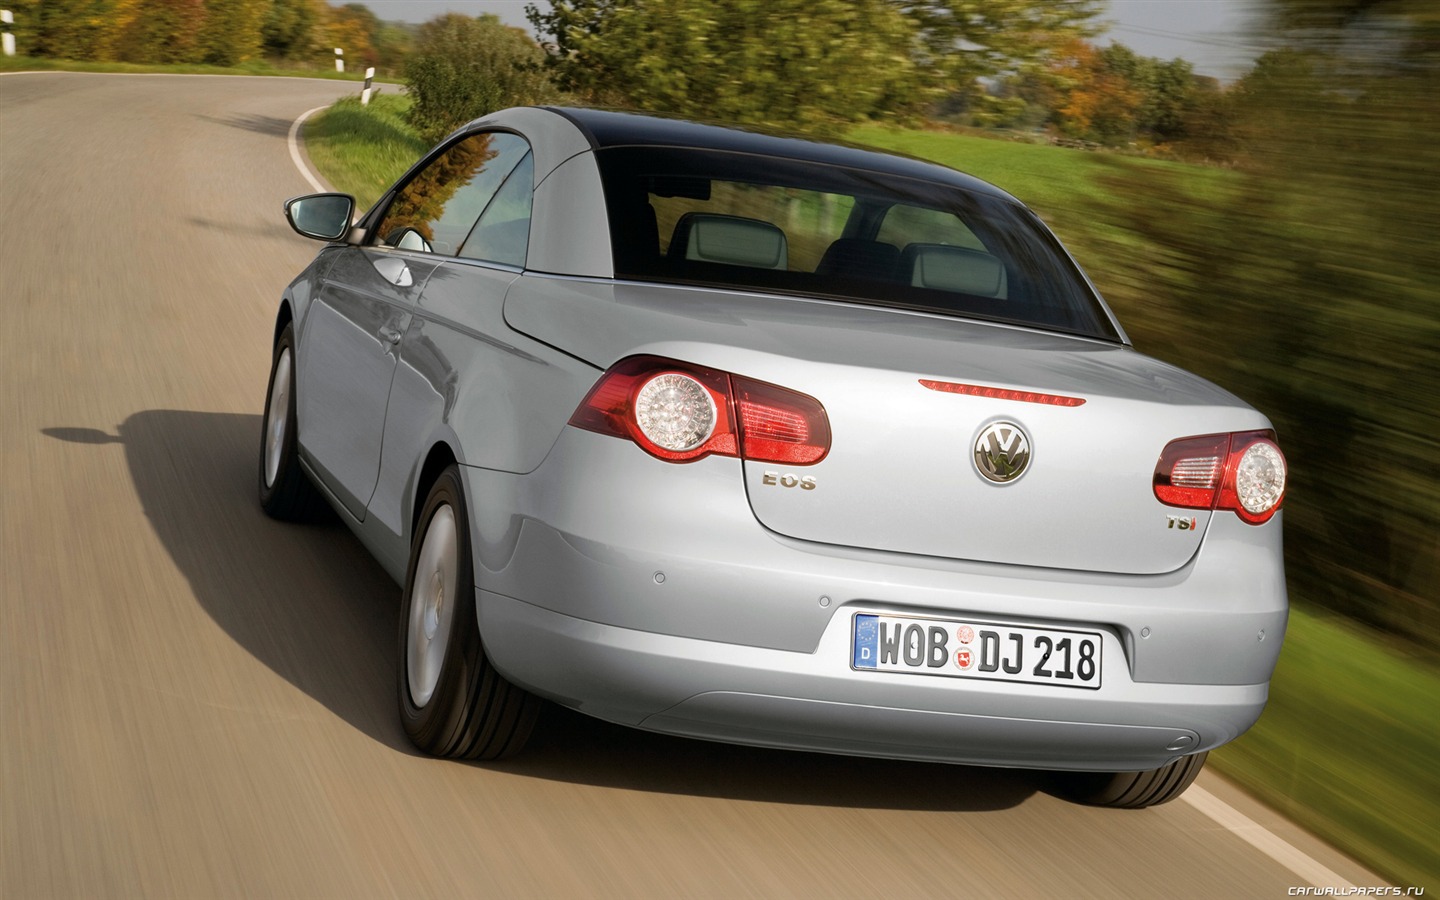 Volkswagen Eos - 2010 大众16 - 1440x900